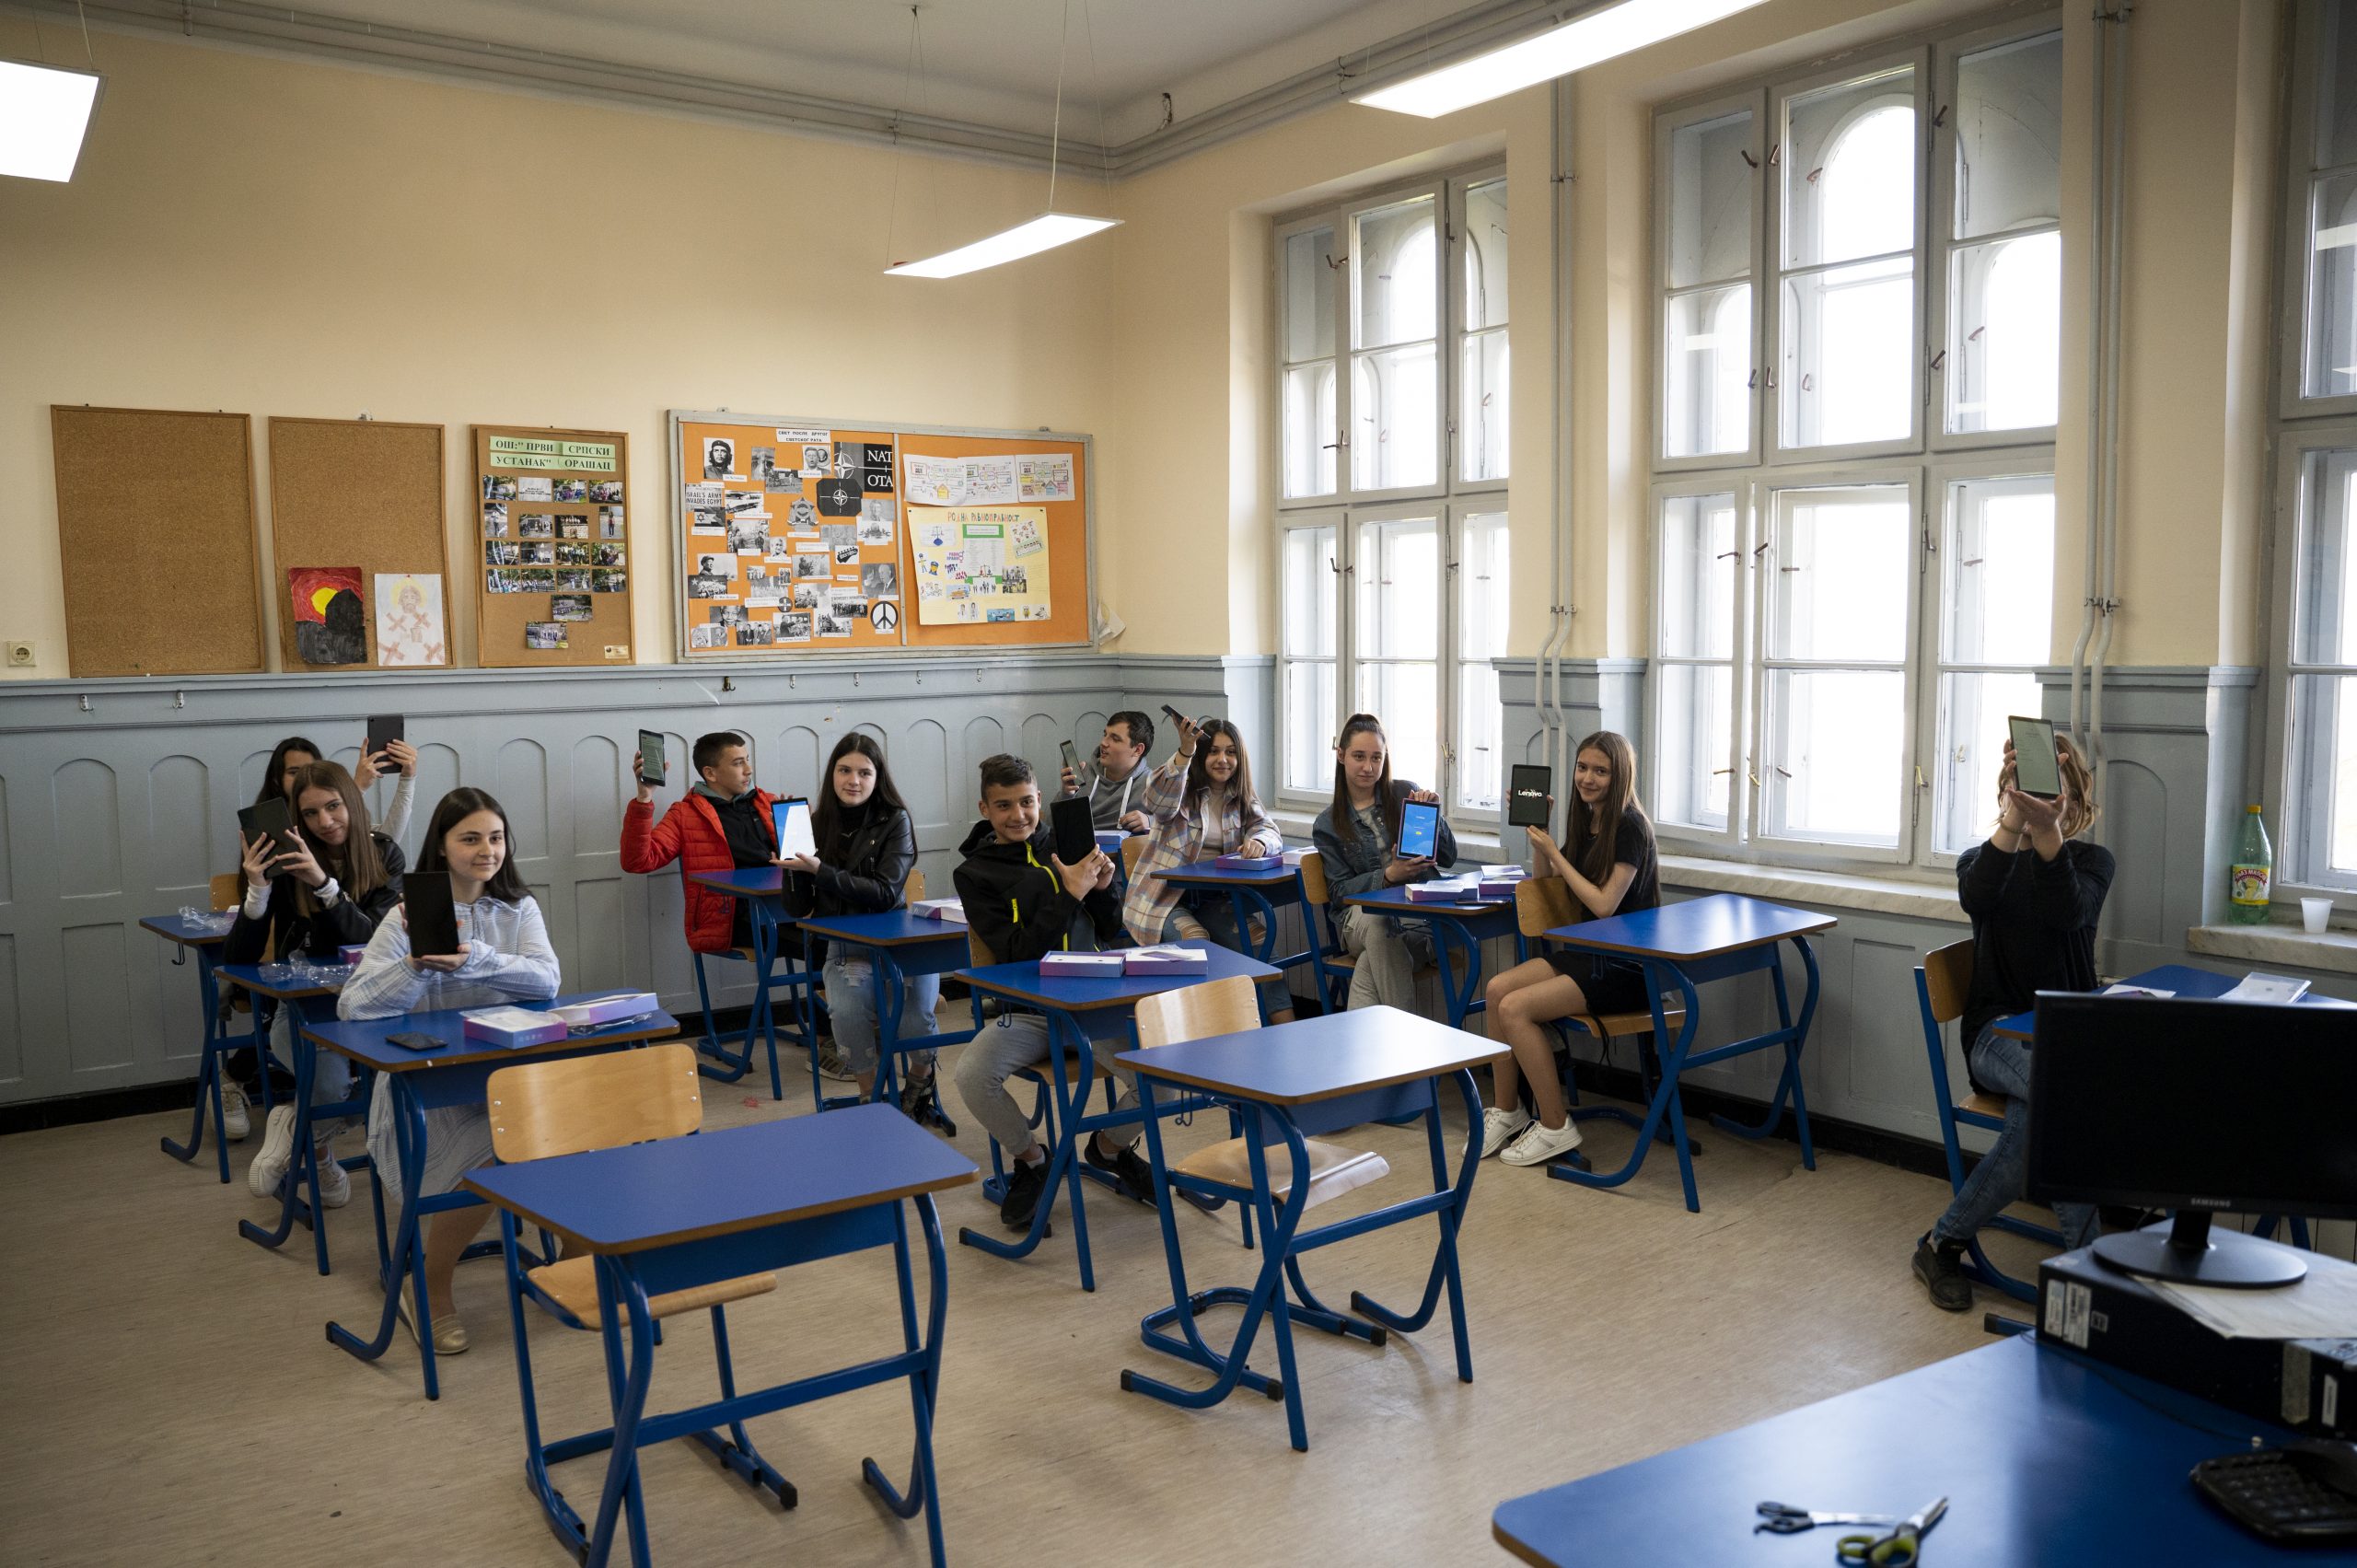 Tablets Donated to Primary School “Prvi srpski ustanak” in Orašac